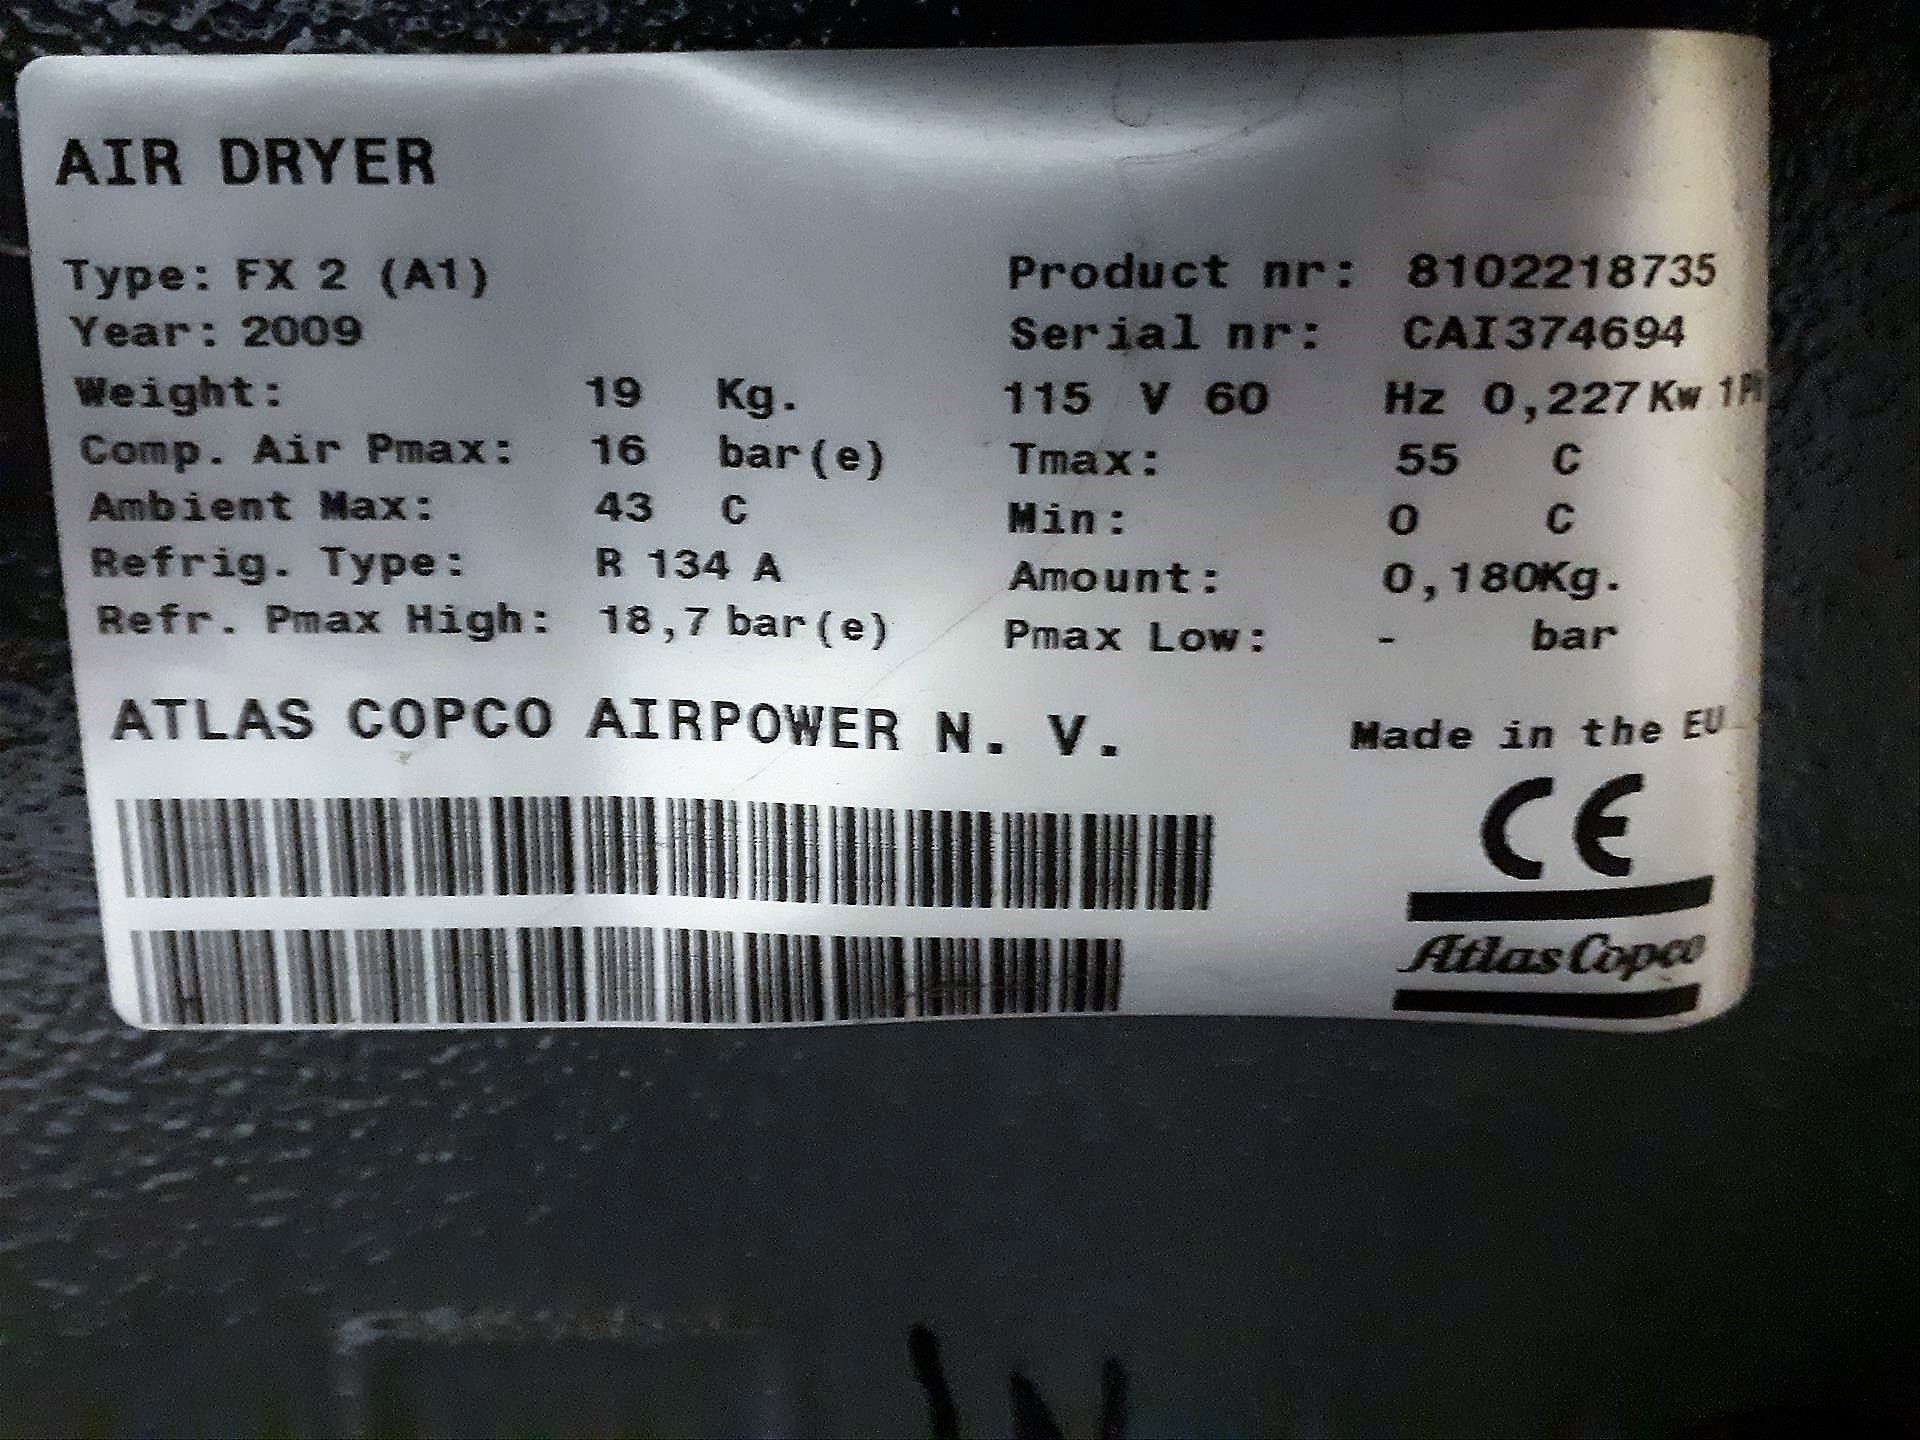 AtlasCopco air dryer, mod. FX2 (A1), ser. no. CAI374694 (2009) - Image 2 of 2